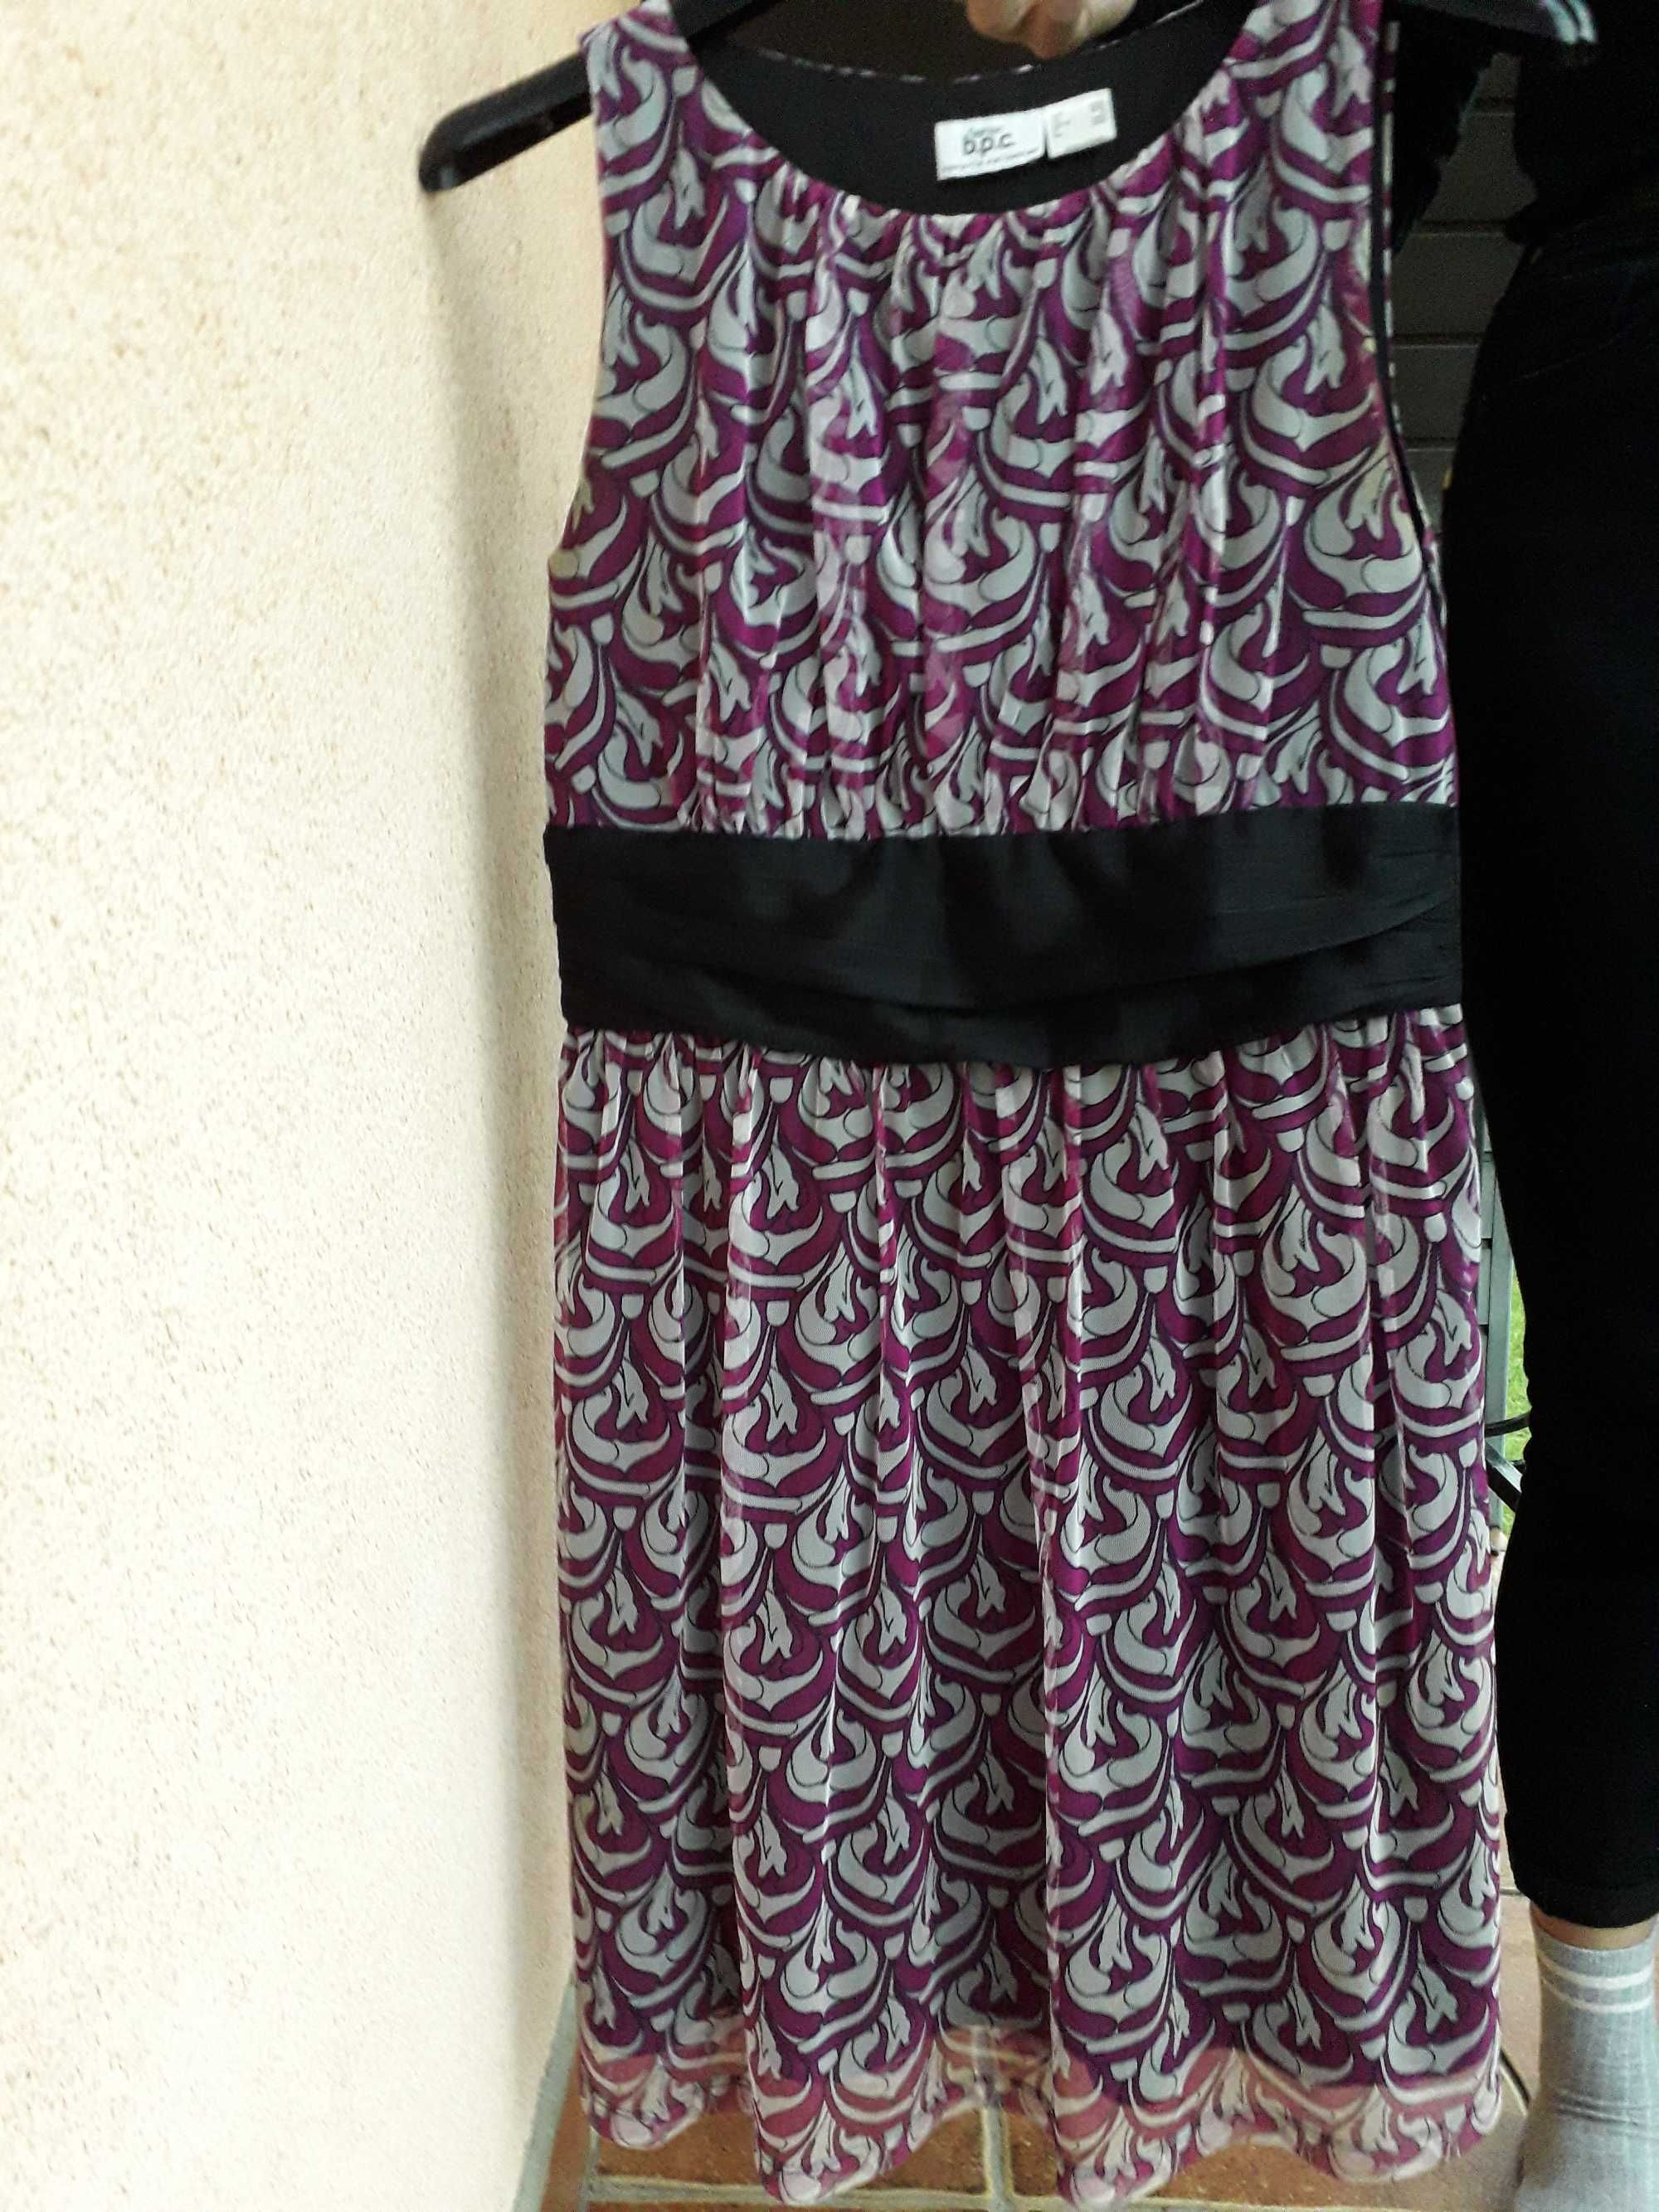 Sukienka fioletowa